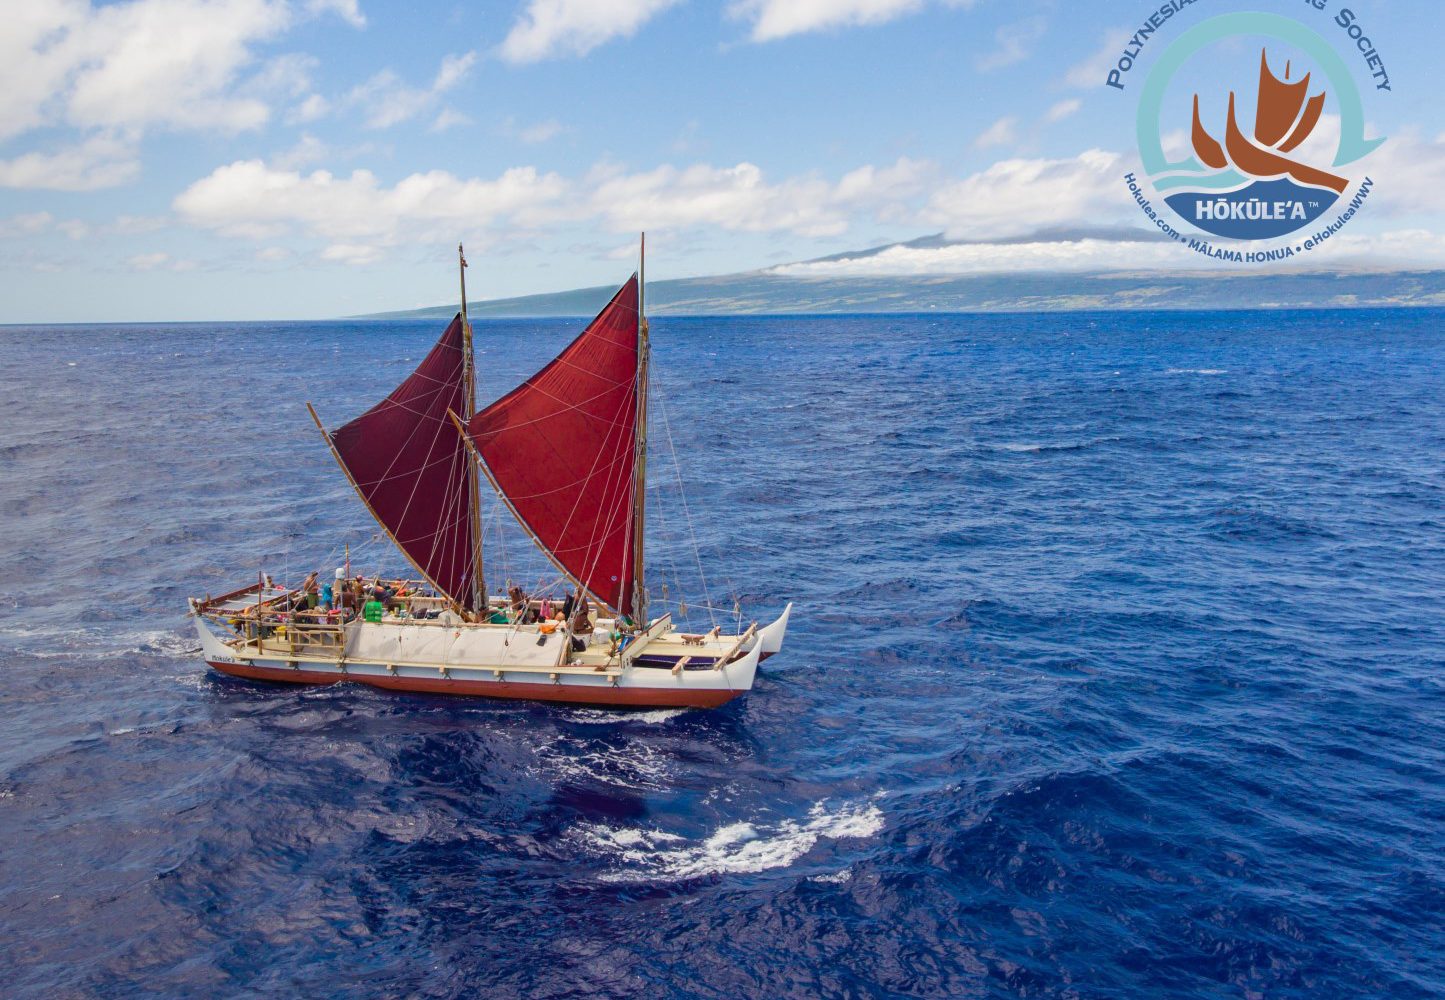 古代ポリネシアの伝統航海カヌー「ホクレア号」ドキュメンタリー映画、日本初上映